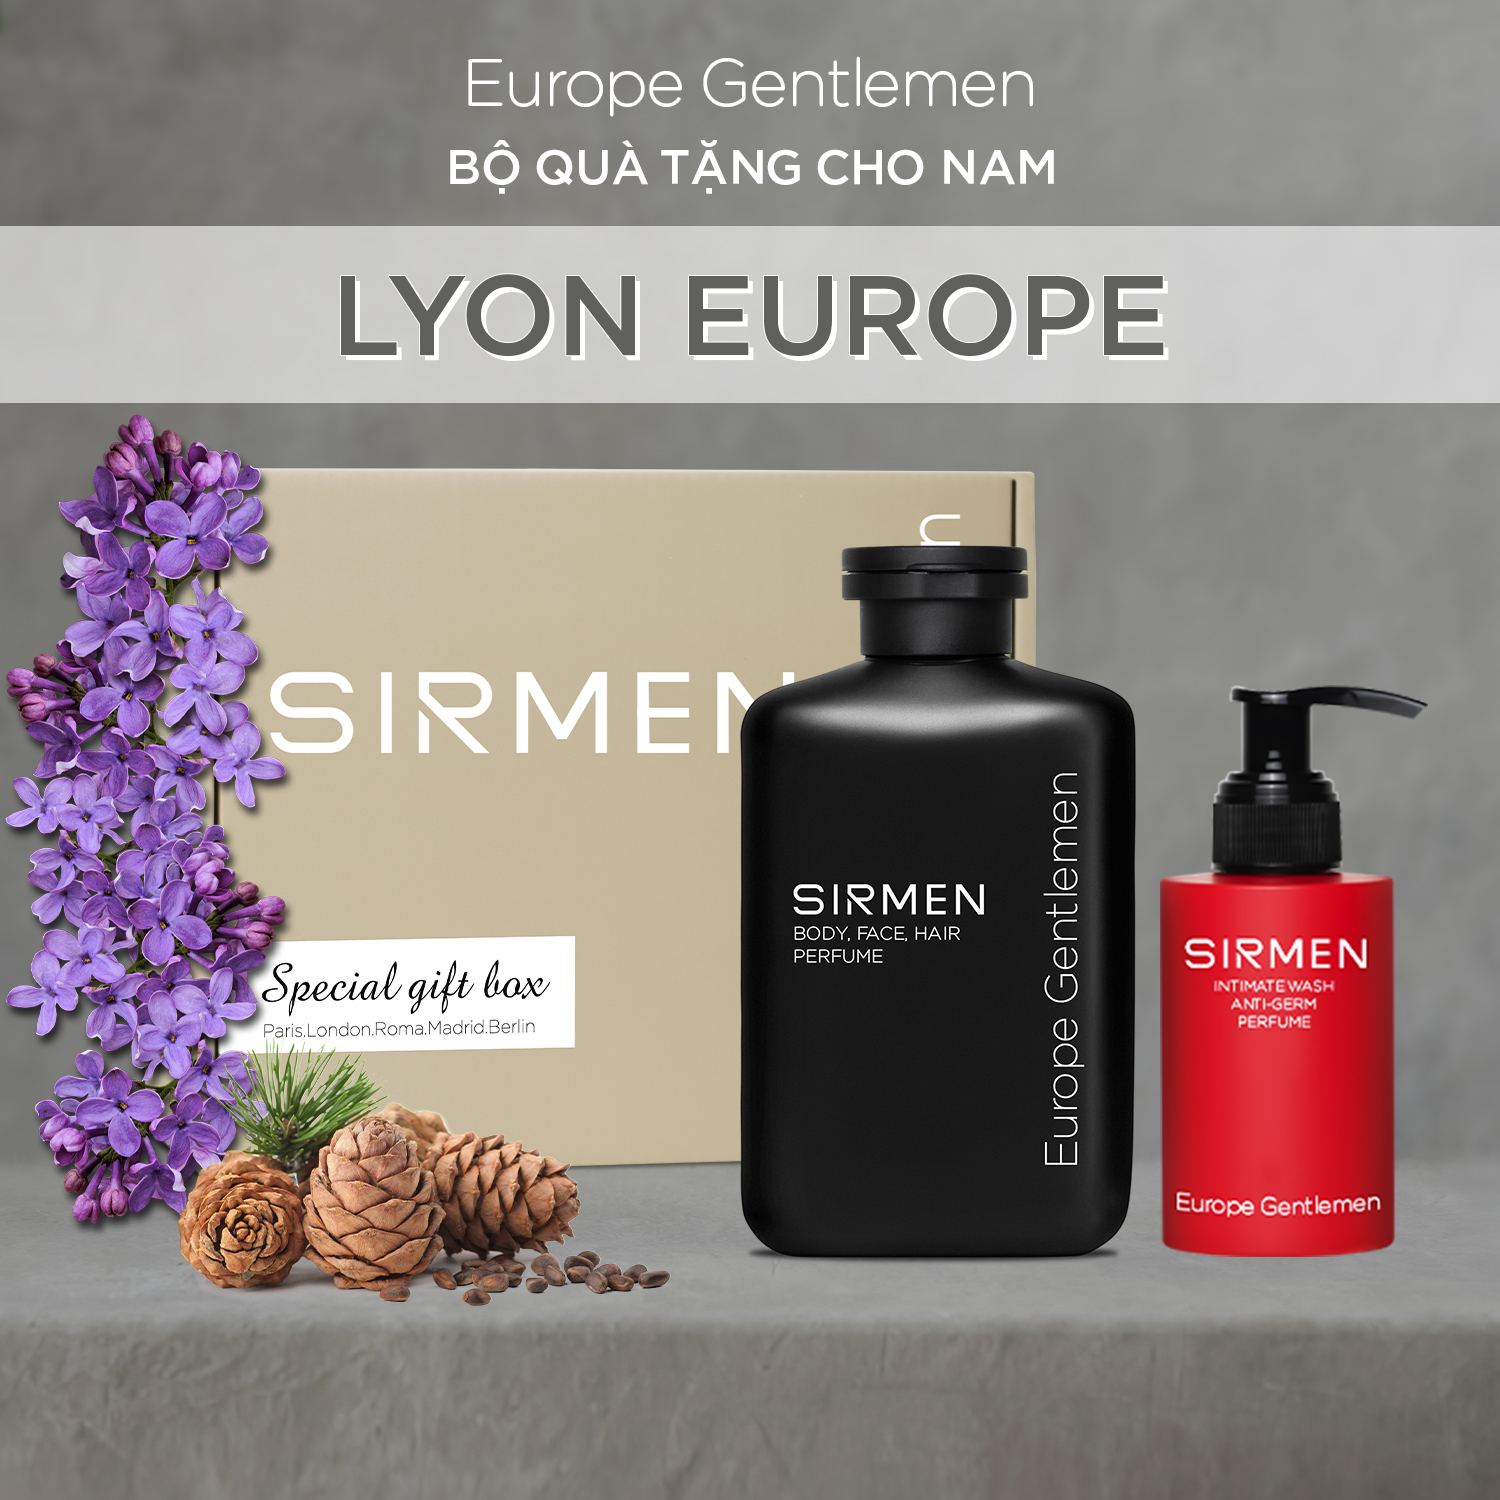 [Combo Lyon Europe] Sữa tắm 350g và Dung dịch vệ sinh nam 100g nguyên liệu châu Âu SIRMEN Europe Gentlemen chiết xuất tự nhiên công nghệ EU-Nano